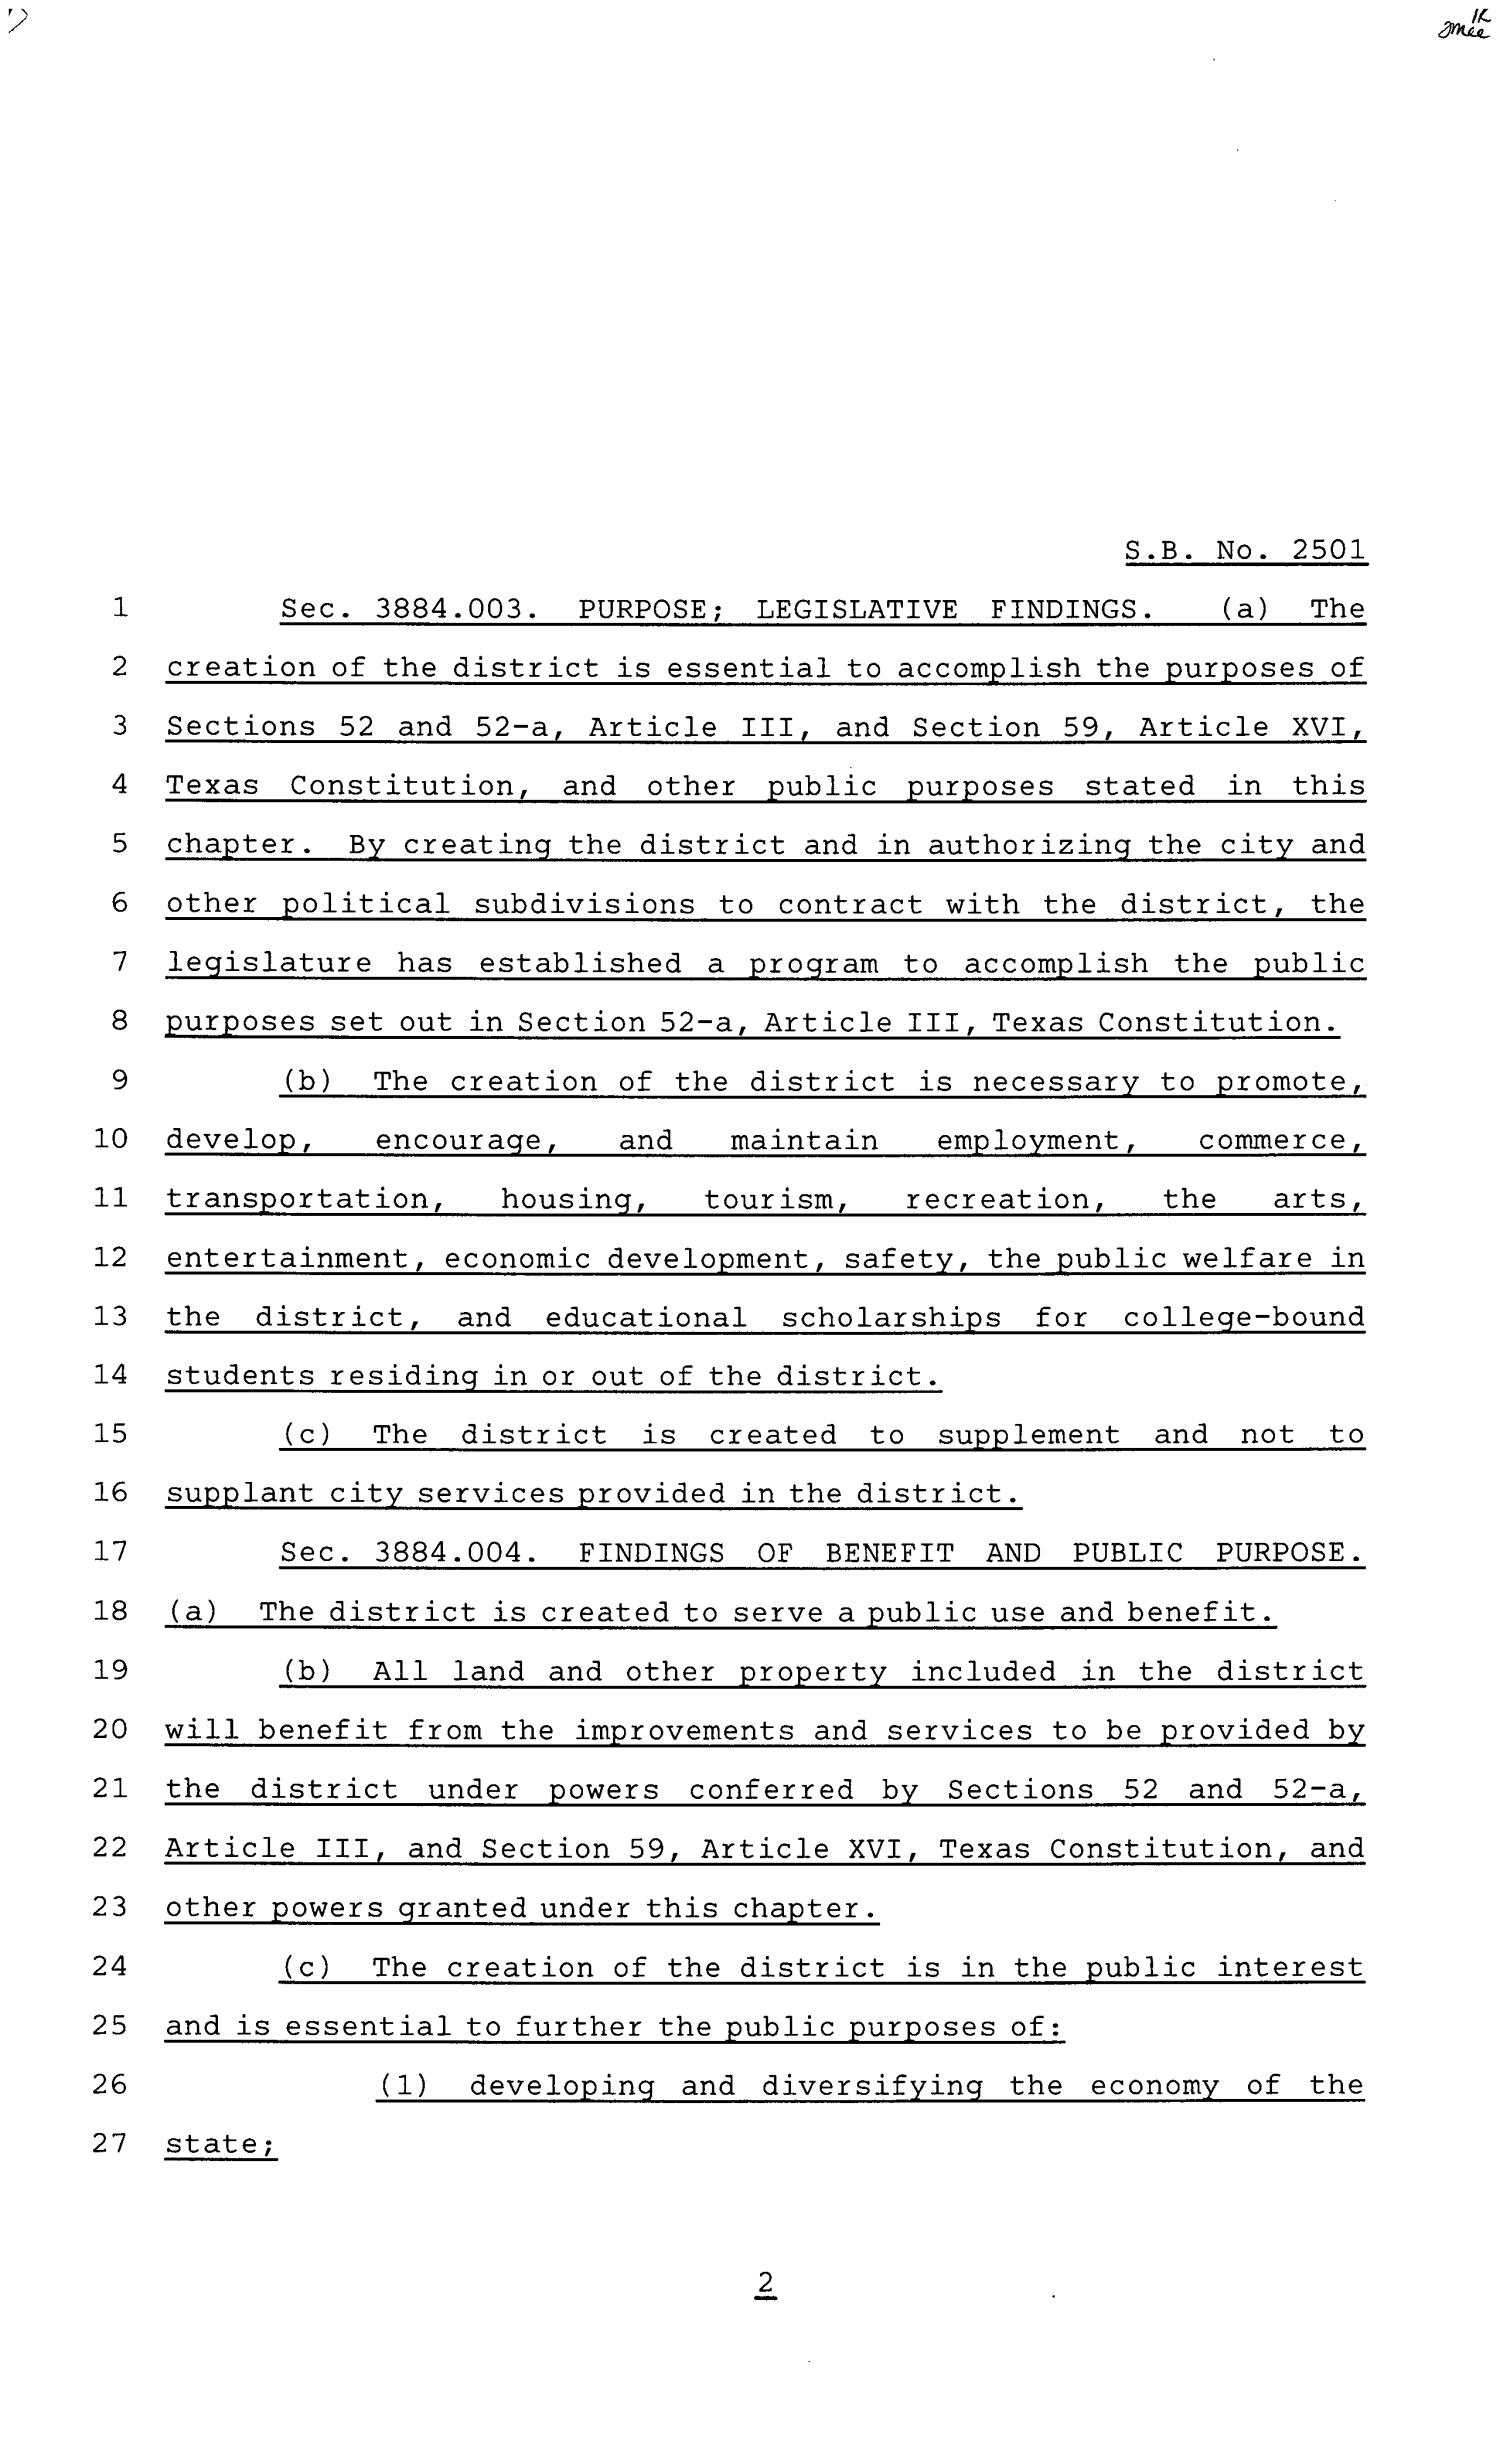 81st Texas Legislature, Senate Bill 2501, Chapter 866
                                                
                                                    [Sequence #]: 2 of 62
                                                